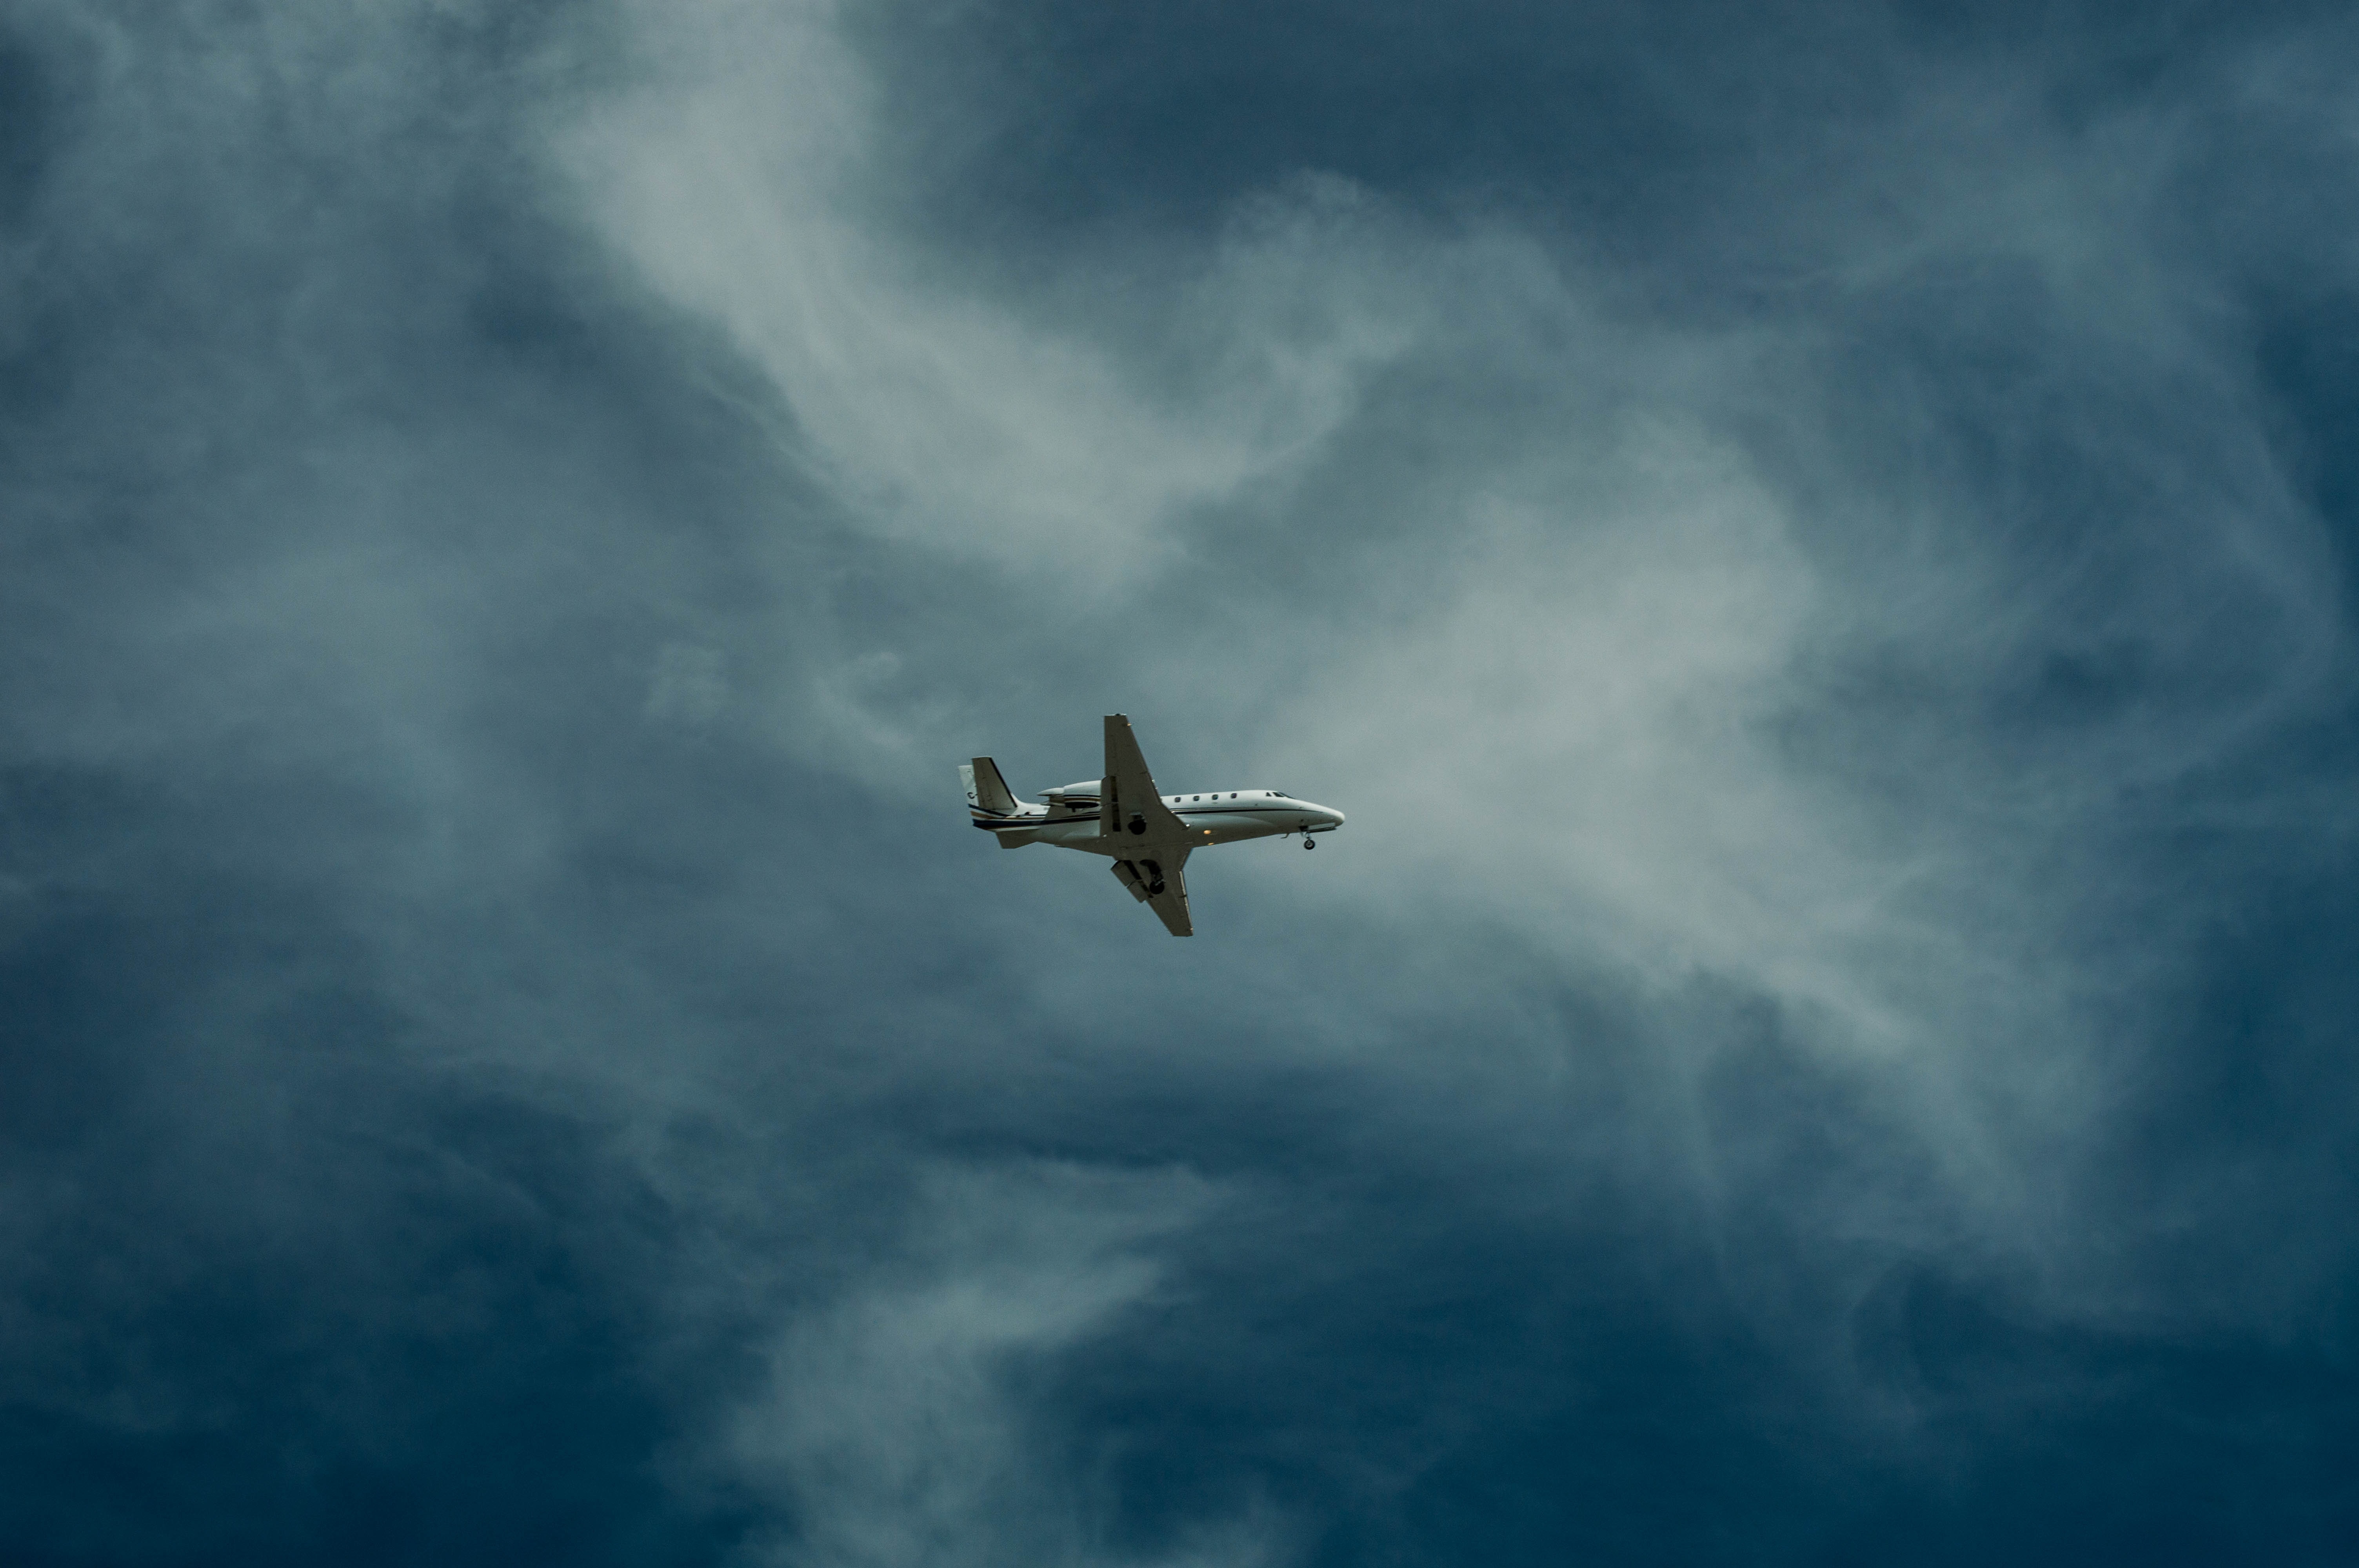 Самолет находящийся в полете преодолевает 220 метров. Самолет в небе. Cfvjktn DF yt,t. Обои самолет. Cfvjk`n d uyt,r.